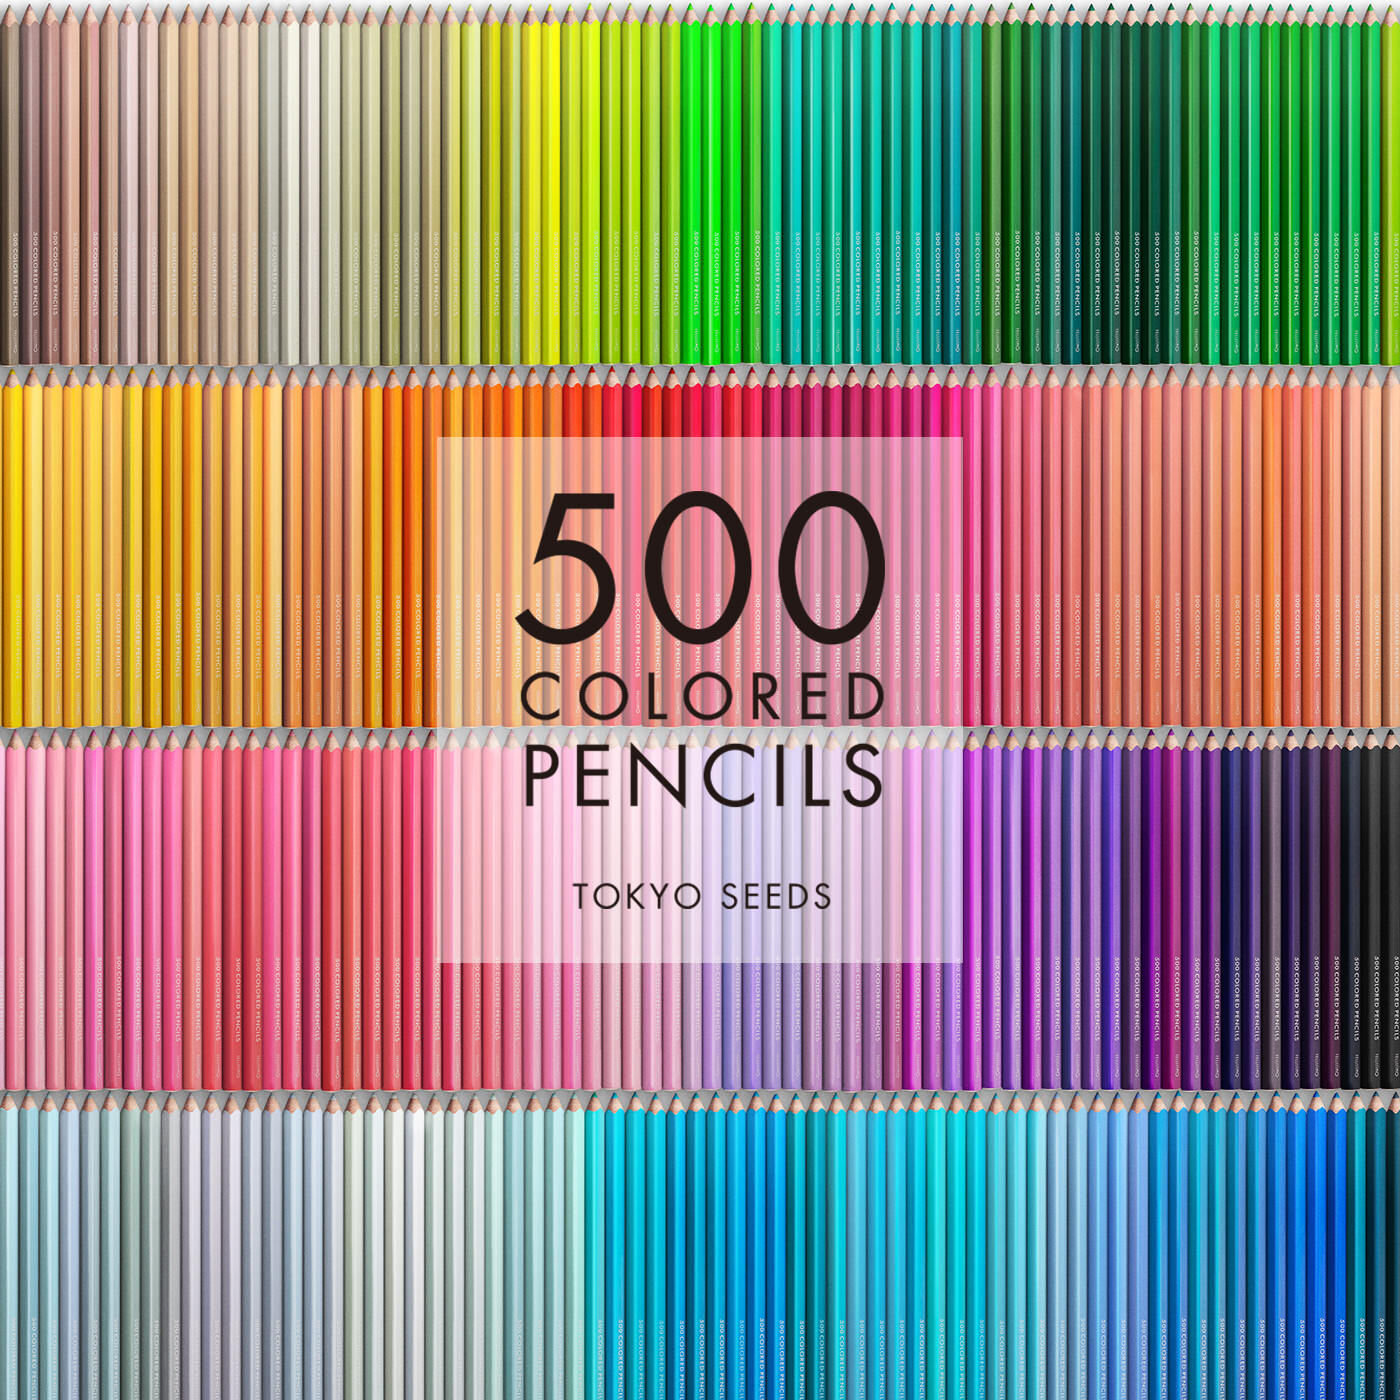 Real Stock|【56/500 FERRIS WHEEL】500色の色えんぴつ TOKYO SEEDS|1992年、世界初の「500色」という膨大な色数の色えんぴつが誕生して以来、その販売数は発売当初から合わせると、世界55ヵ国10万セット以上。今回、メイド・イン・ジャパンにこだわり、すべてが新しく生まれ変わって登場しました。